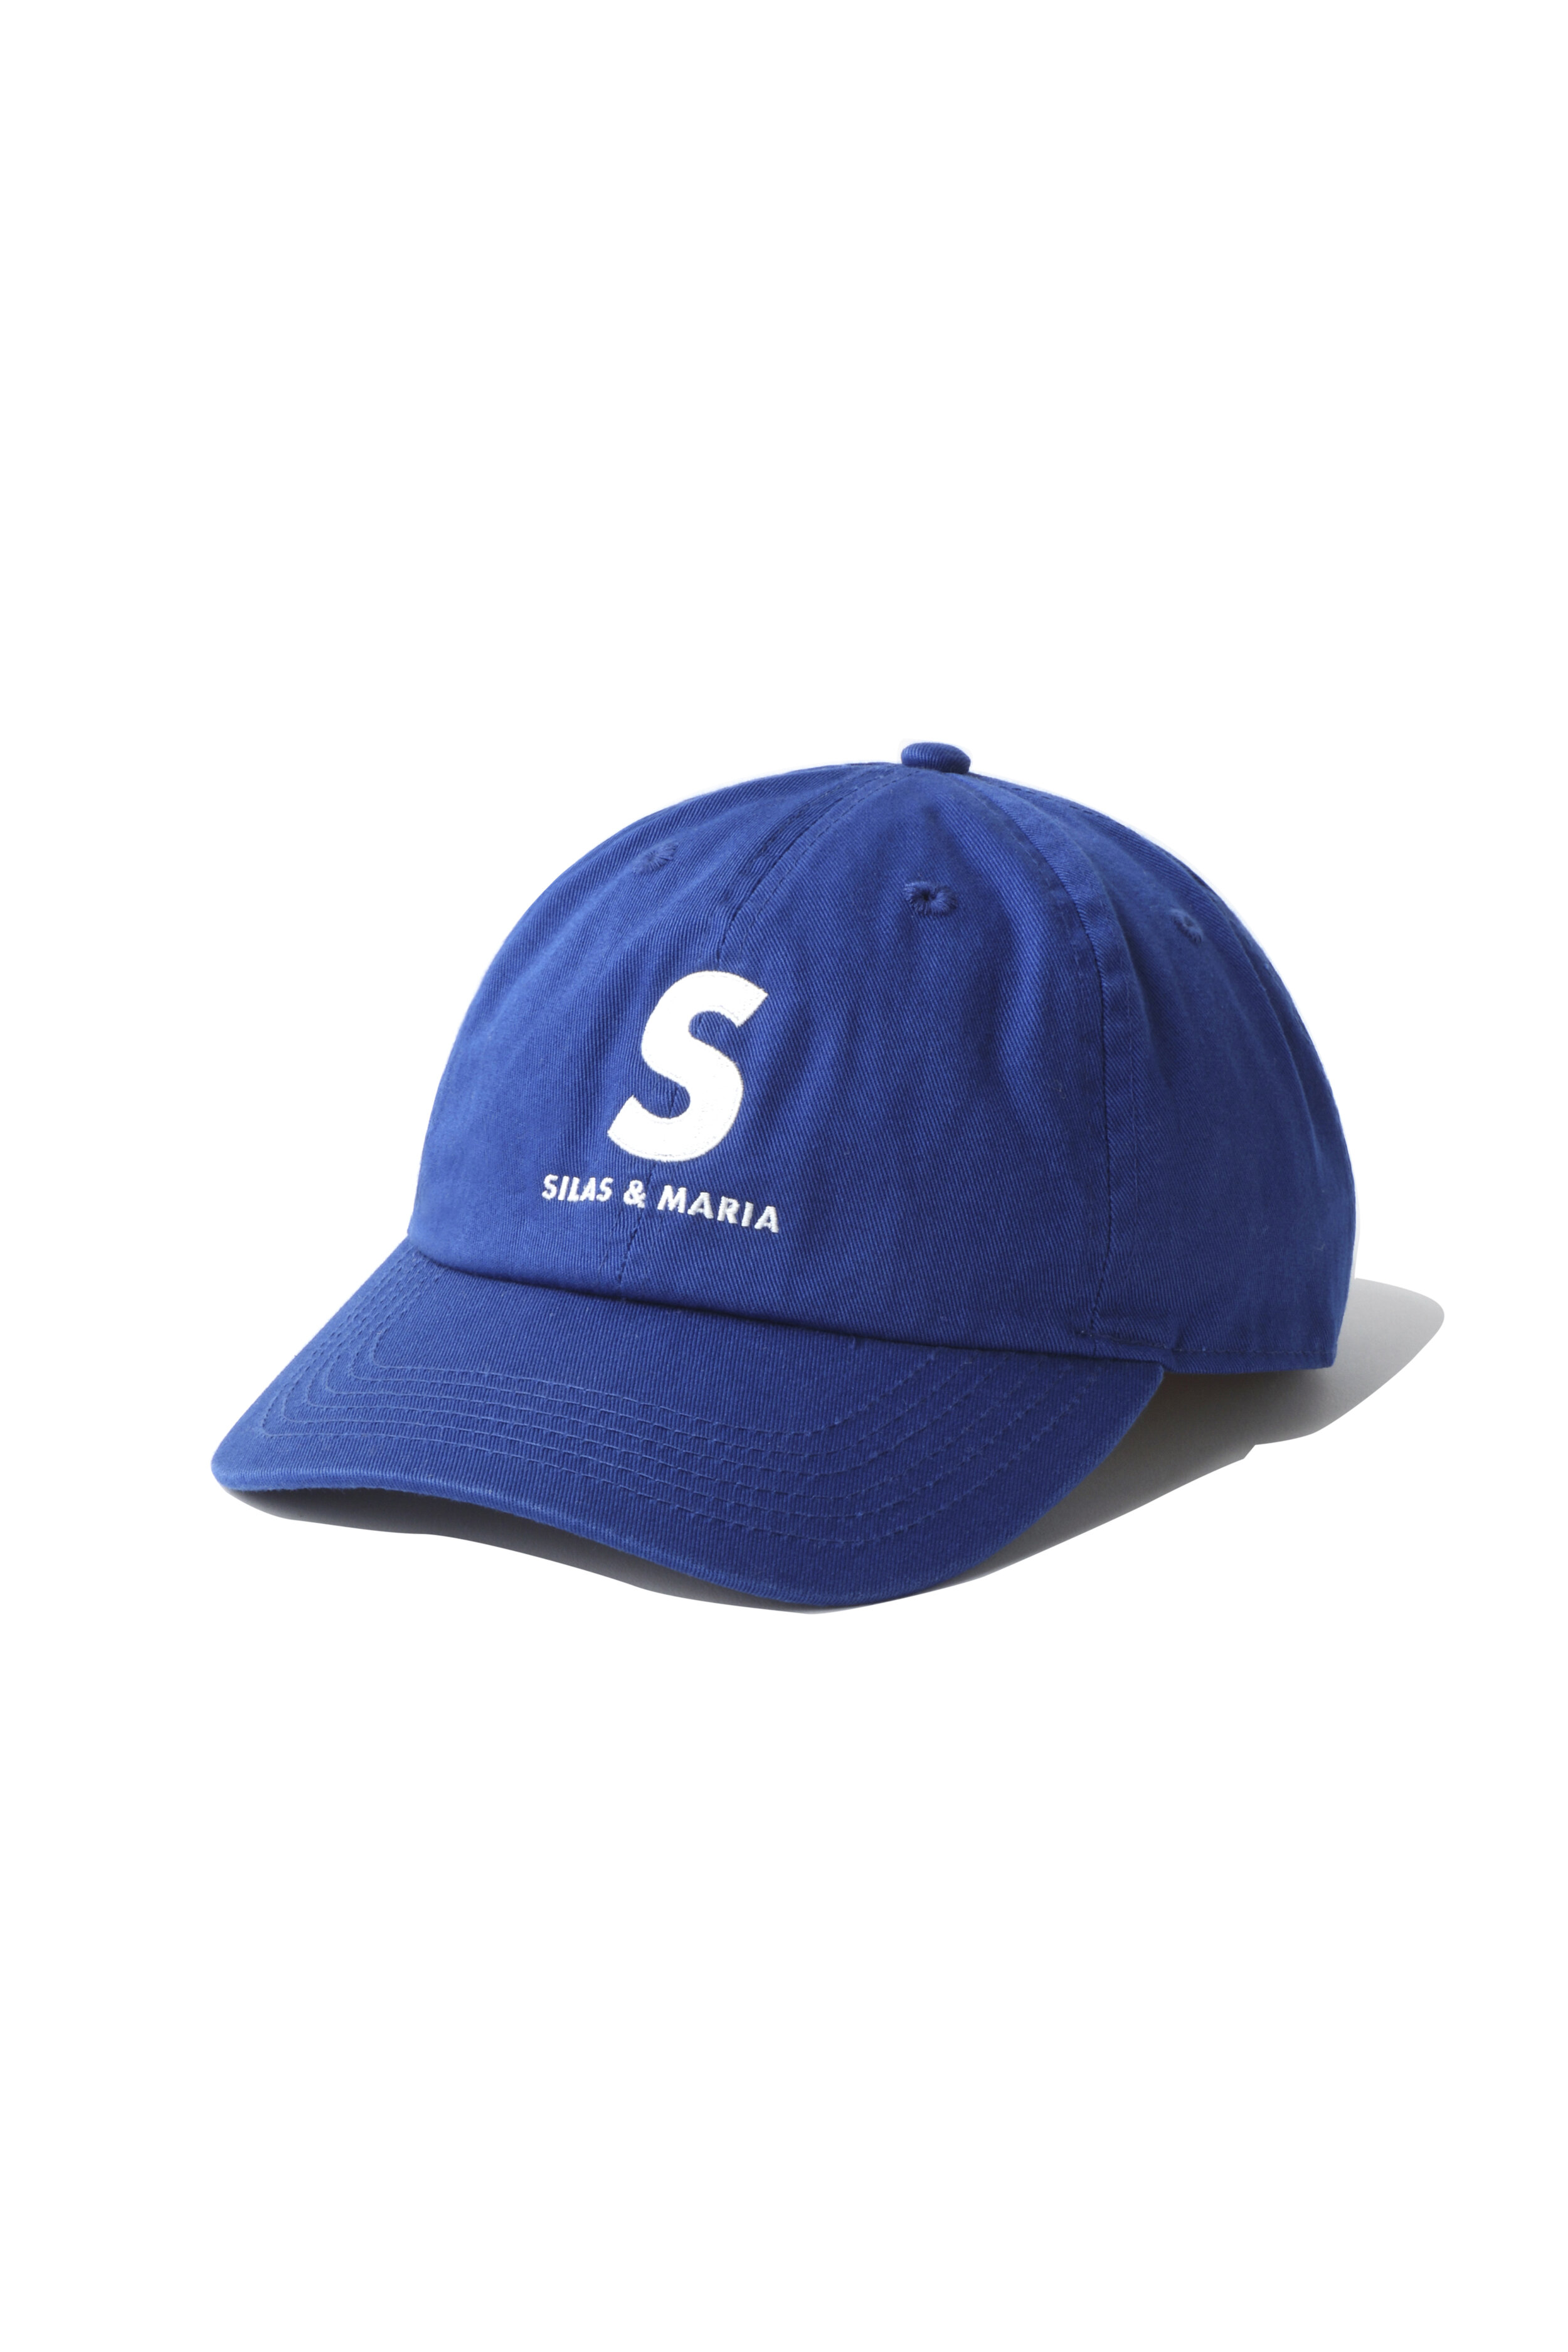  BLUE S CAP                        ￥4,800